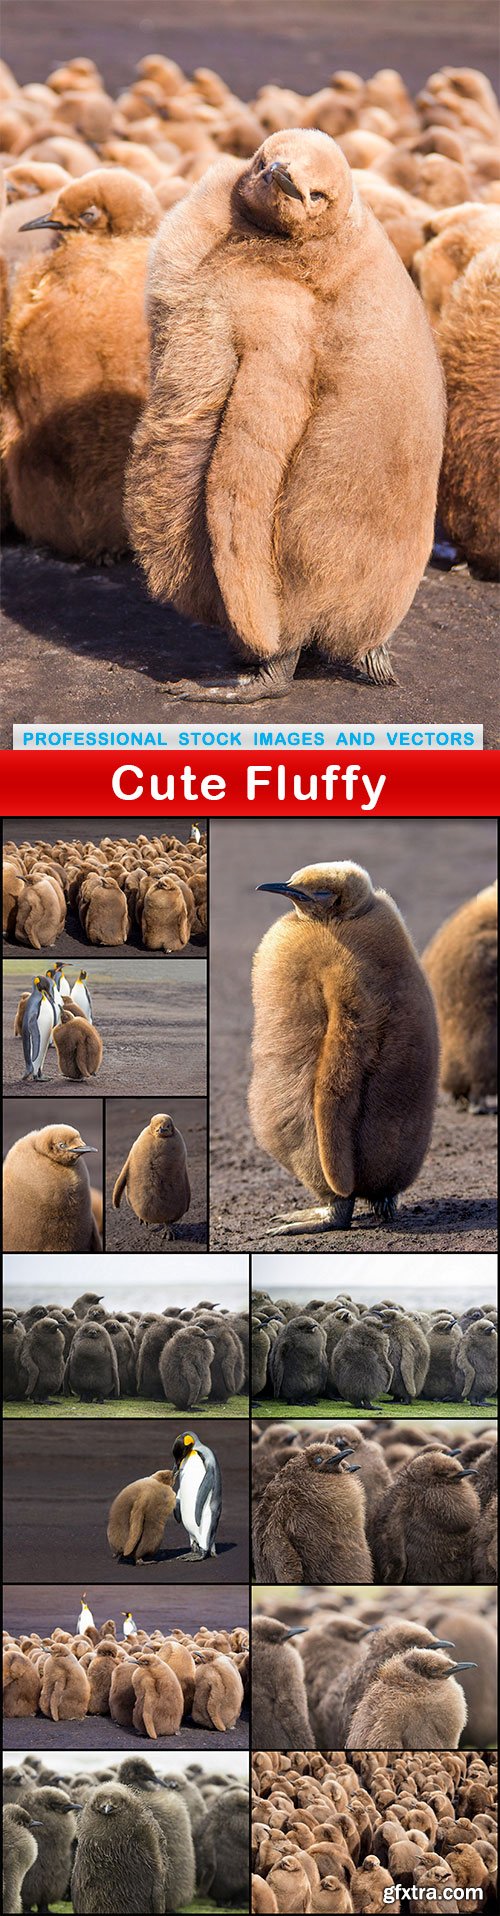 Cute Fluffy - 14 UHQ JPEG